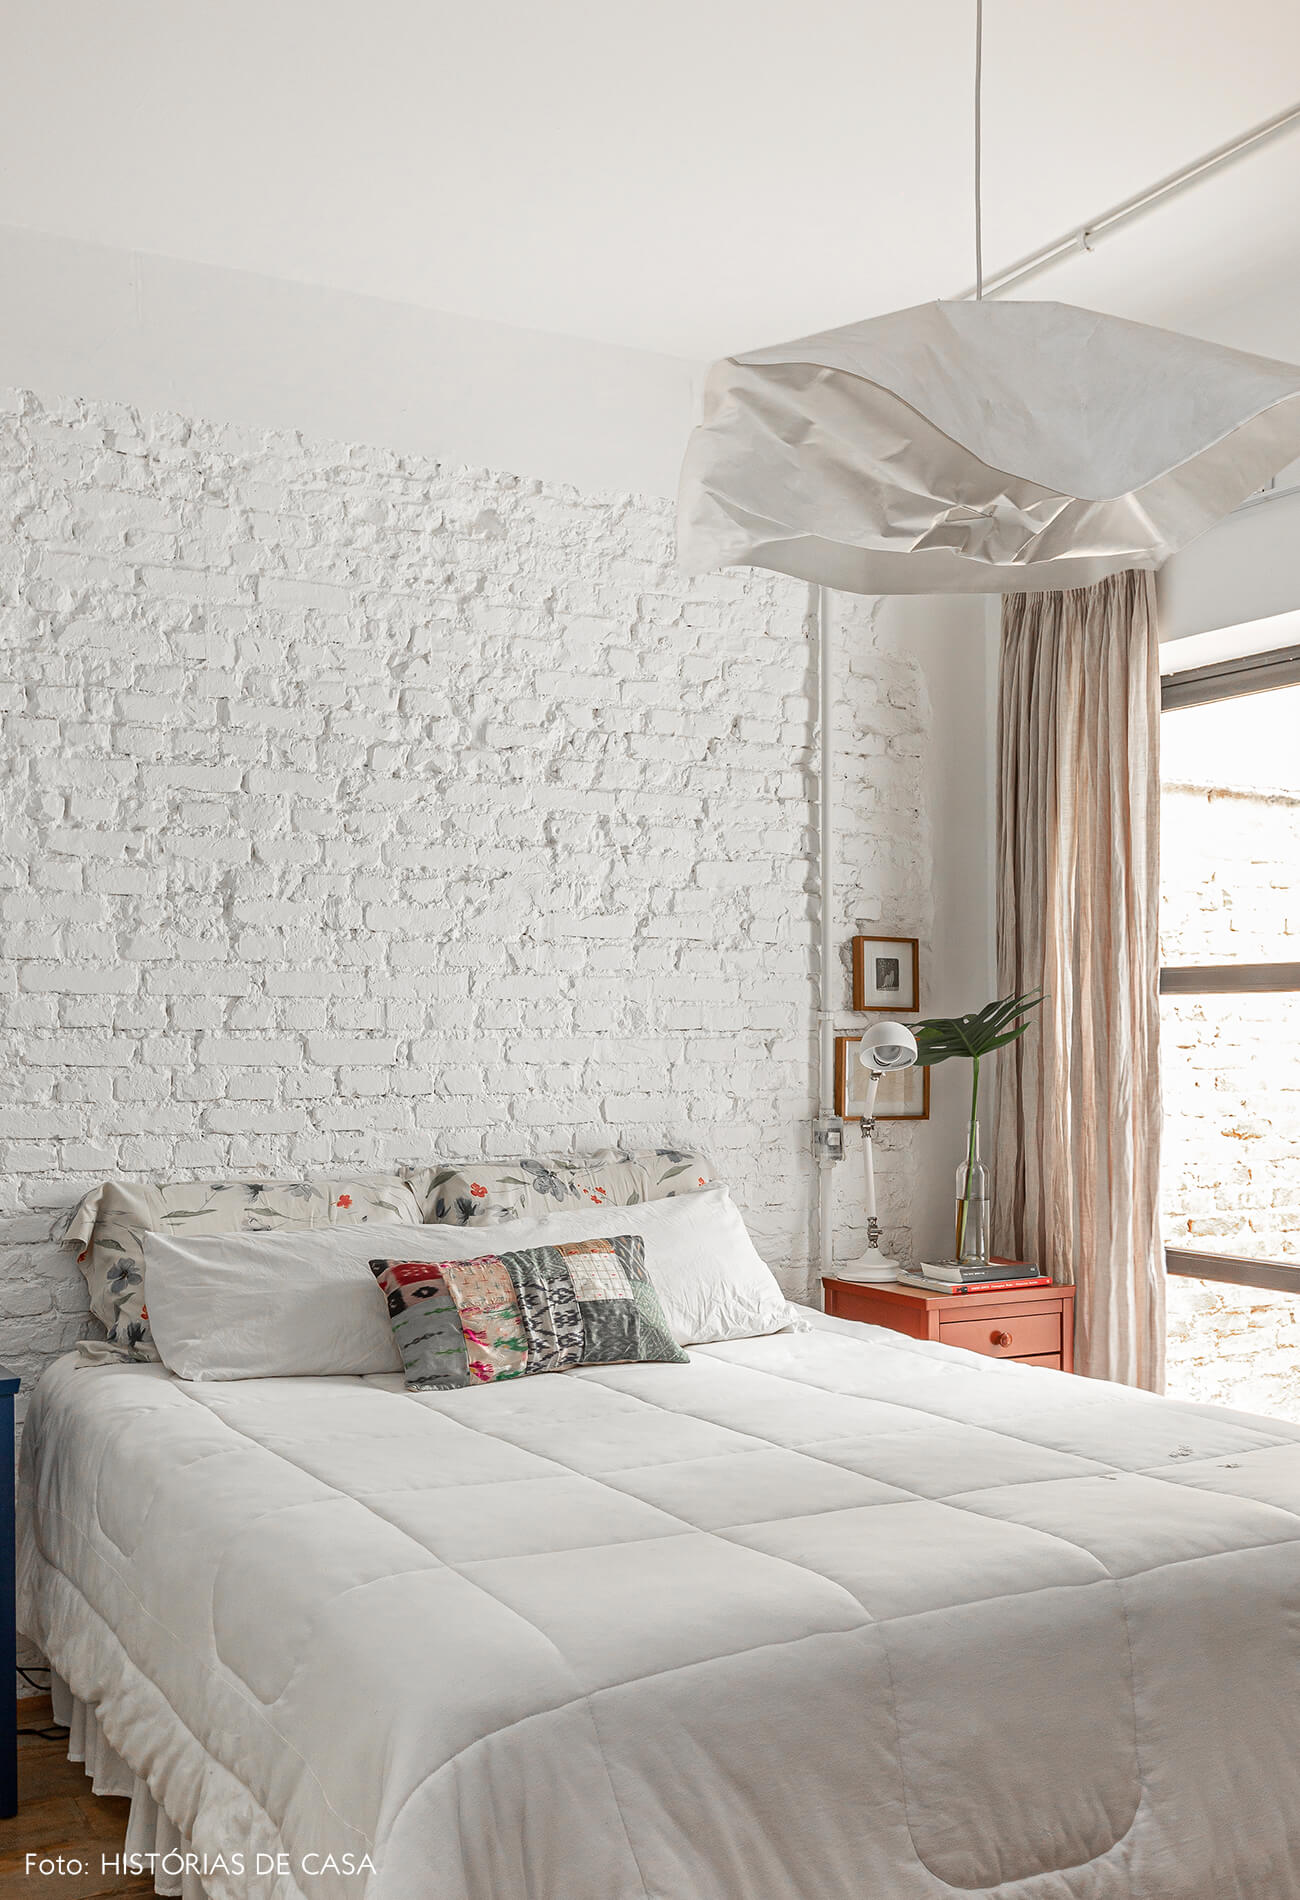 Apartamento térreo, quarto com parede de tijolinho branco e vista para o jardim